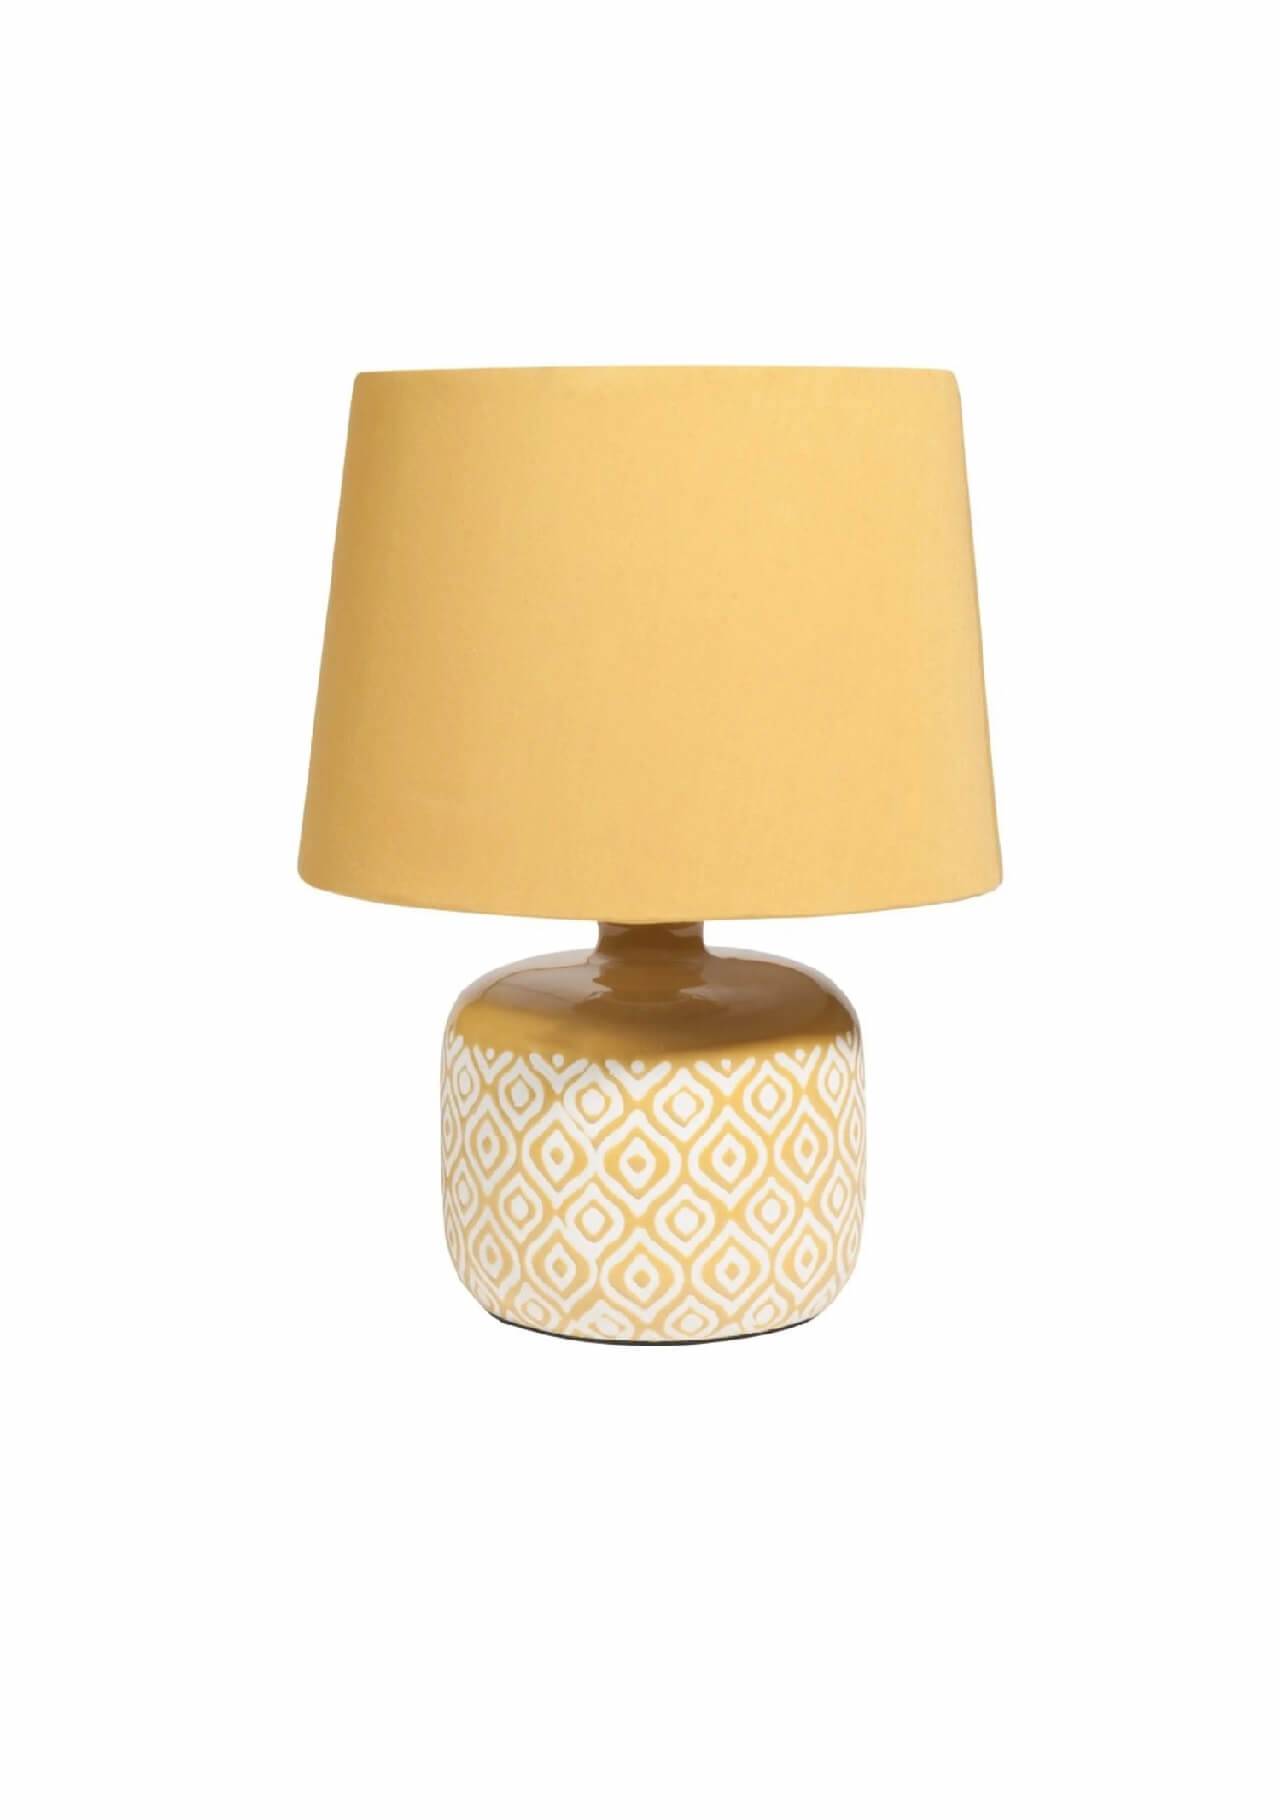 redecorar tu casa este otoño lámpara de cerámica amarilla Maisons du Monde, 16,99€